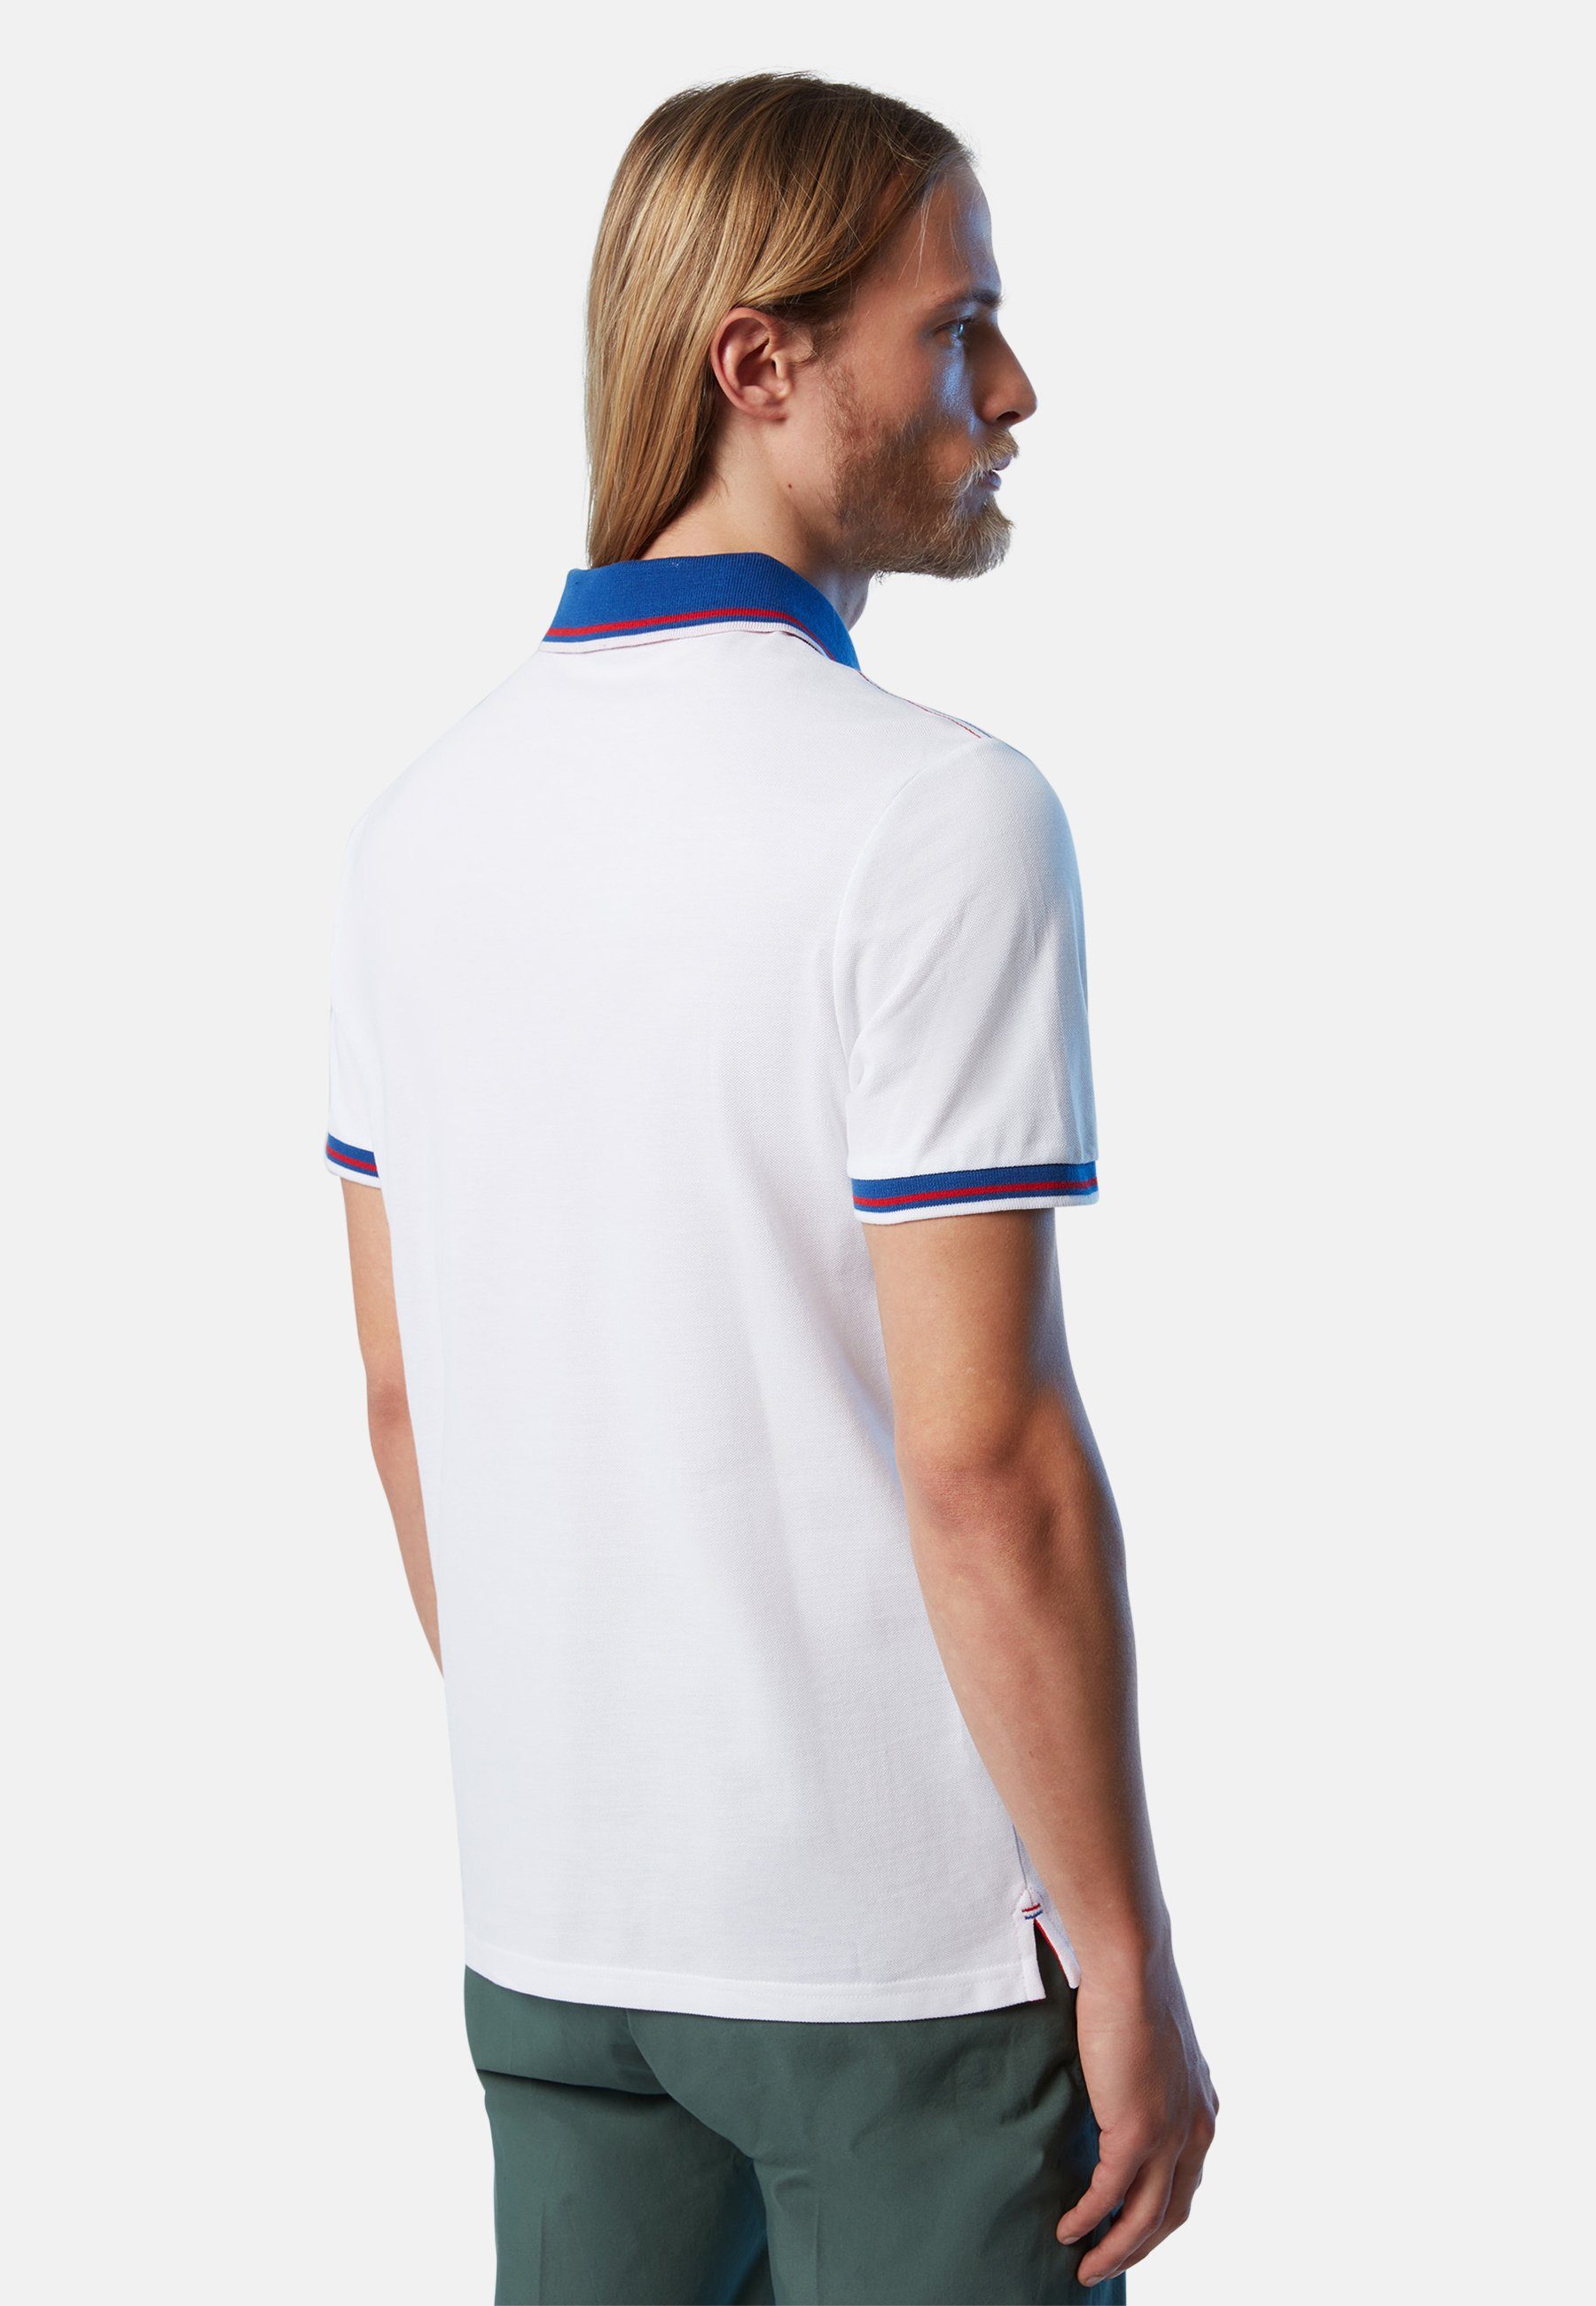 North Sails Poloshirt klassischem weiss Bio-Baumwolle Design mit Poloshirt aus